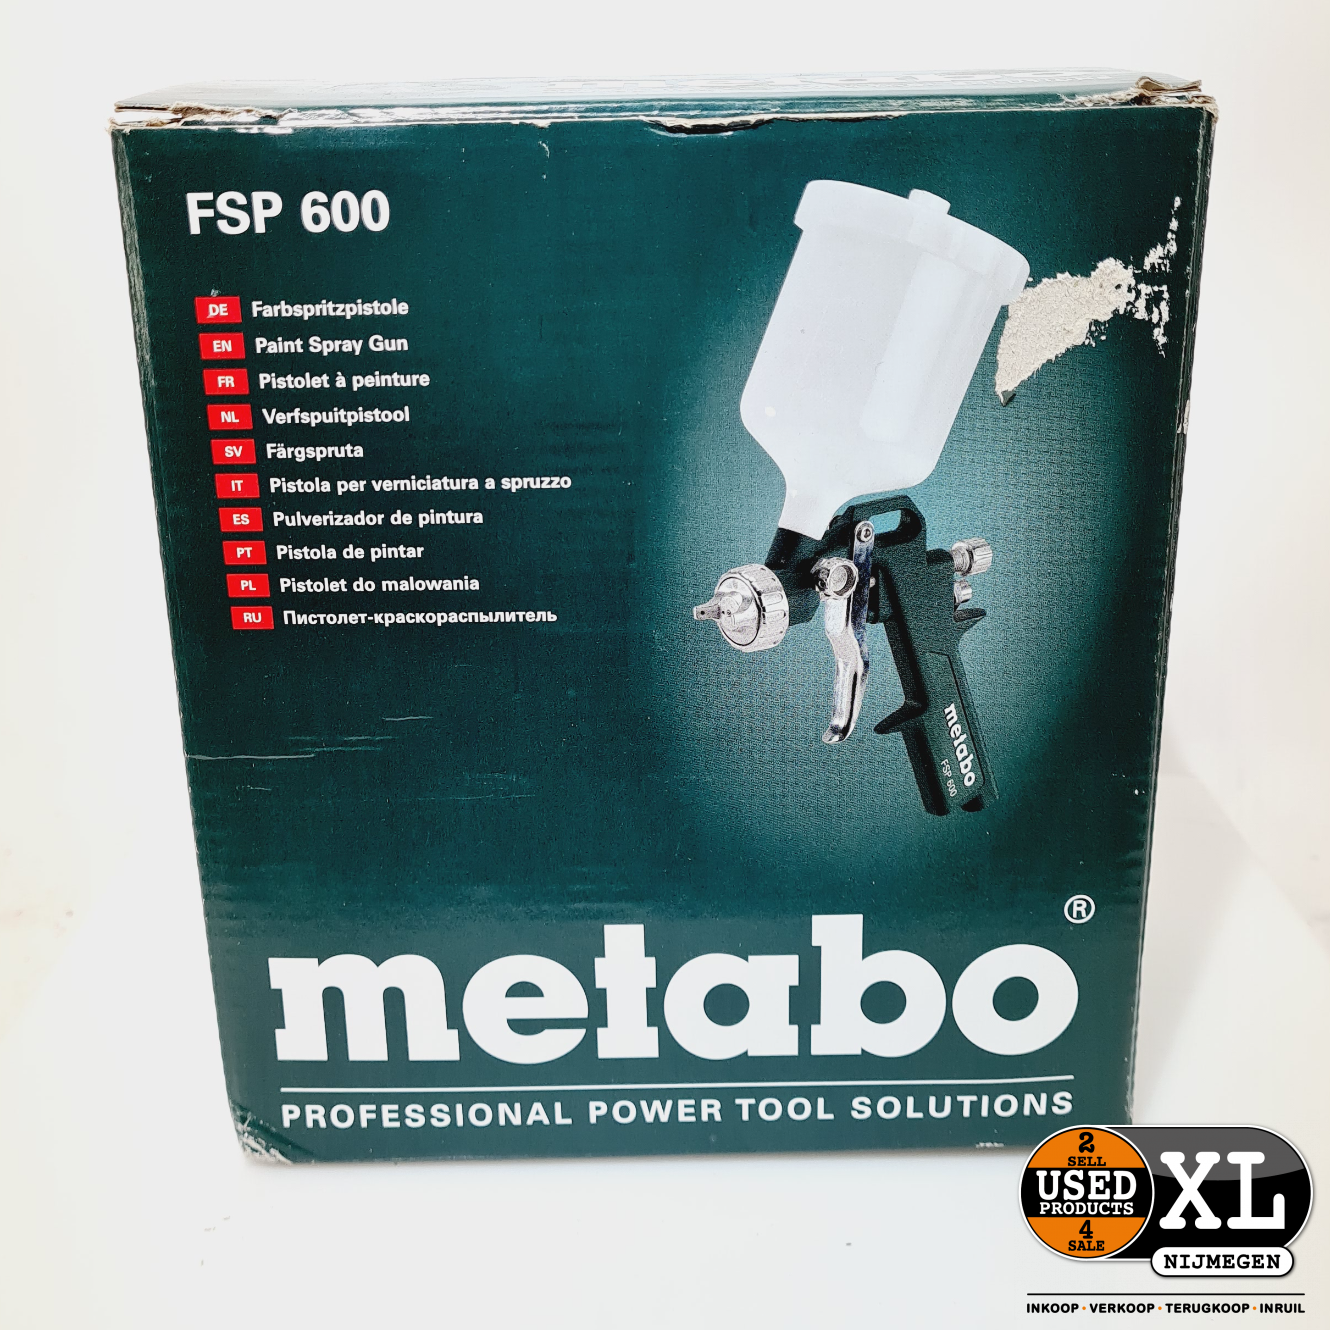 Metabo FSP 600 Verfspuit Lucht met Bovenbeker Doos | Nieuwstaat - Used Products Nijmegen XL